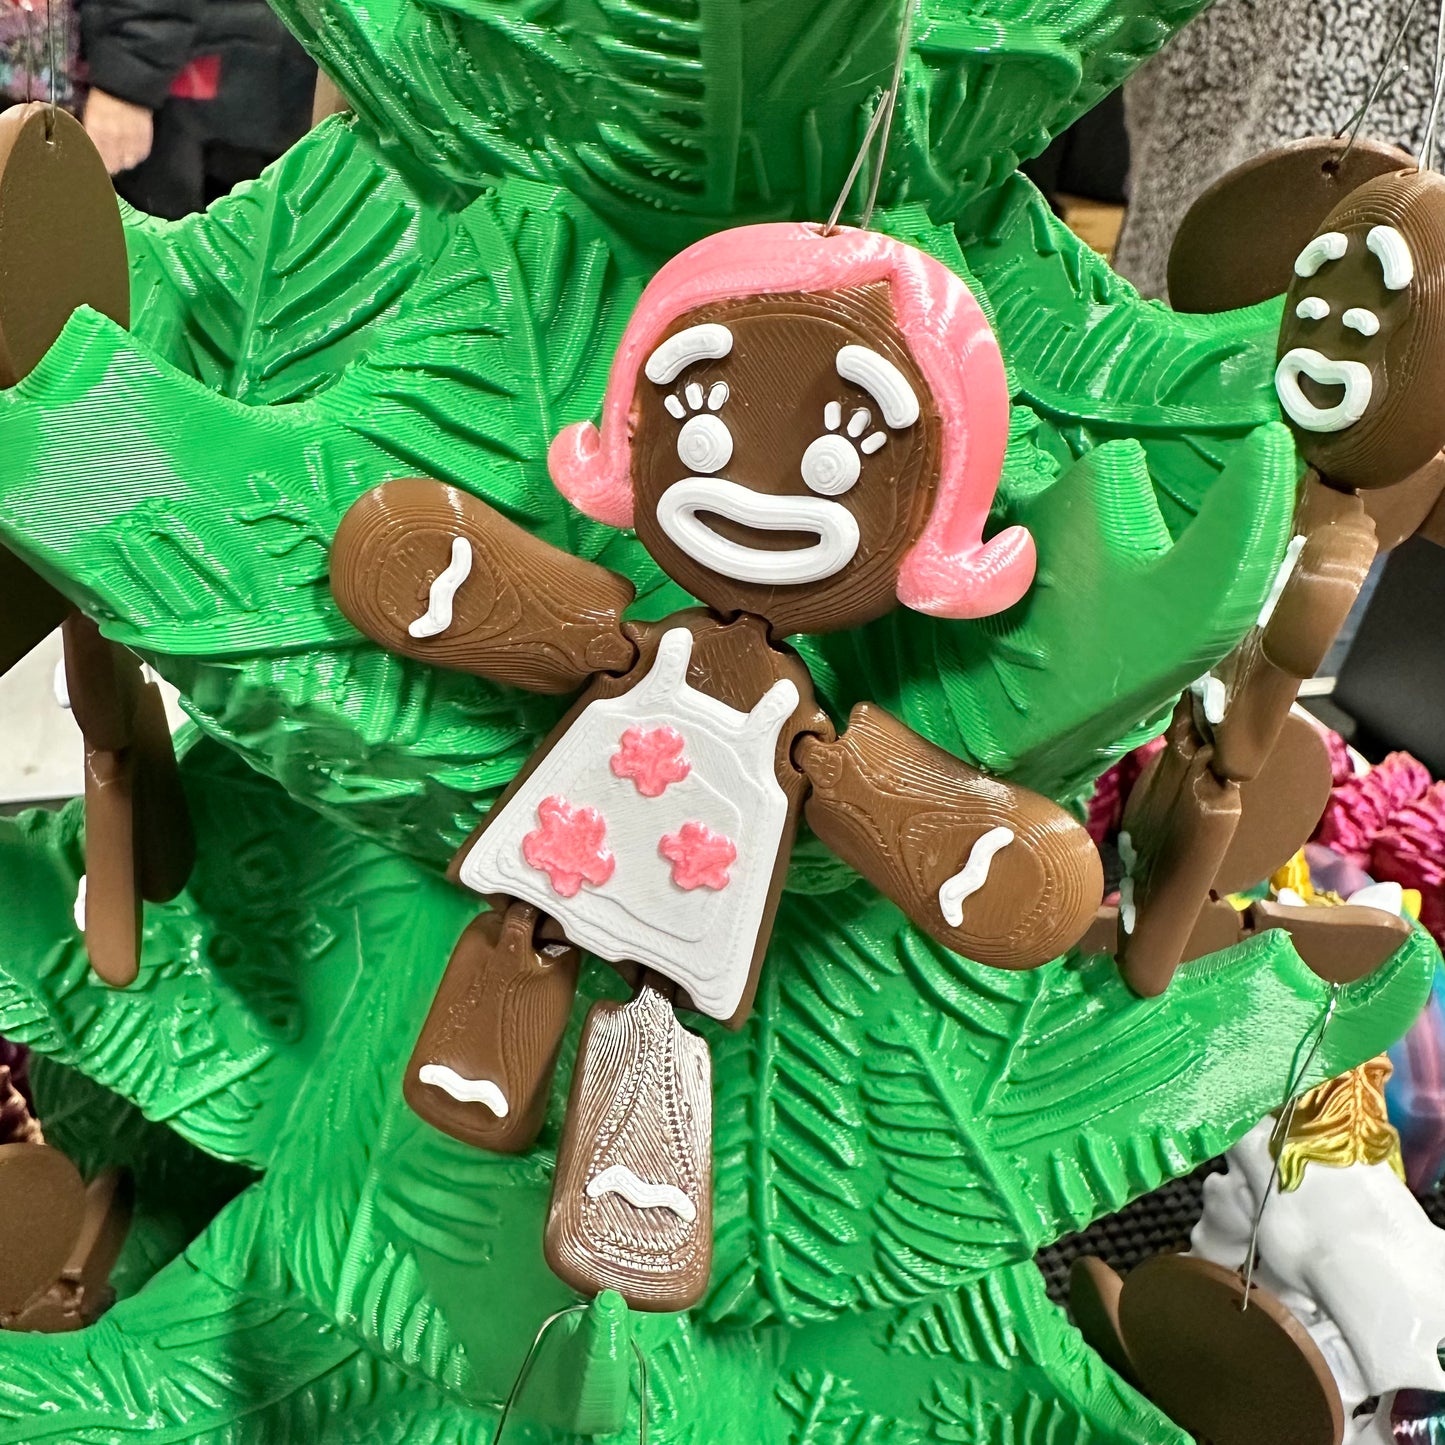 Flexi Gingerbread Ornament